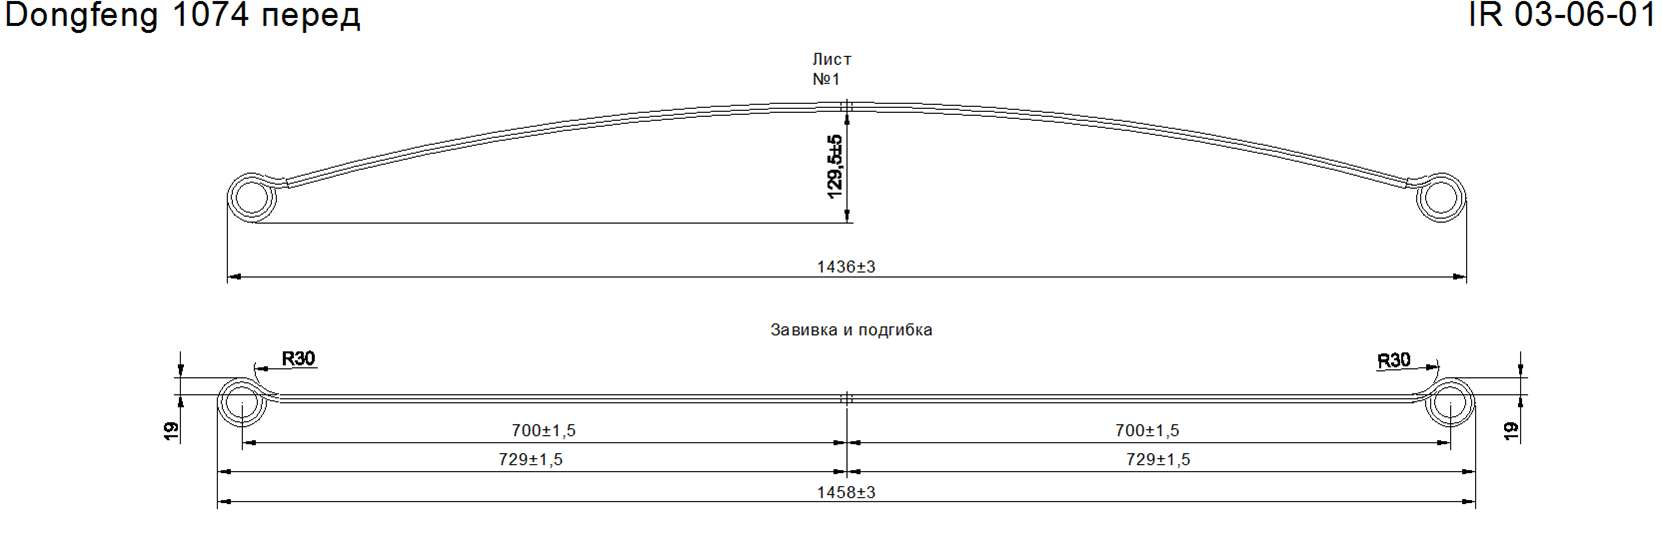 DONG FENG 1074 рессора передняя лист №1 (коренной) (Арт. IR 03-06-01)
Уши на 38 мм
При изготовлении возможна замена полосы 75*10 на полосу 75*11,